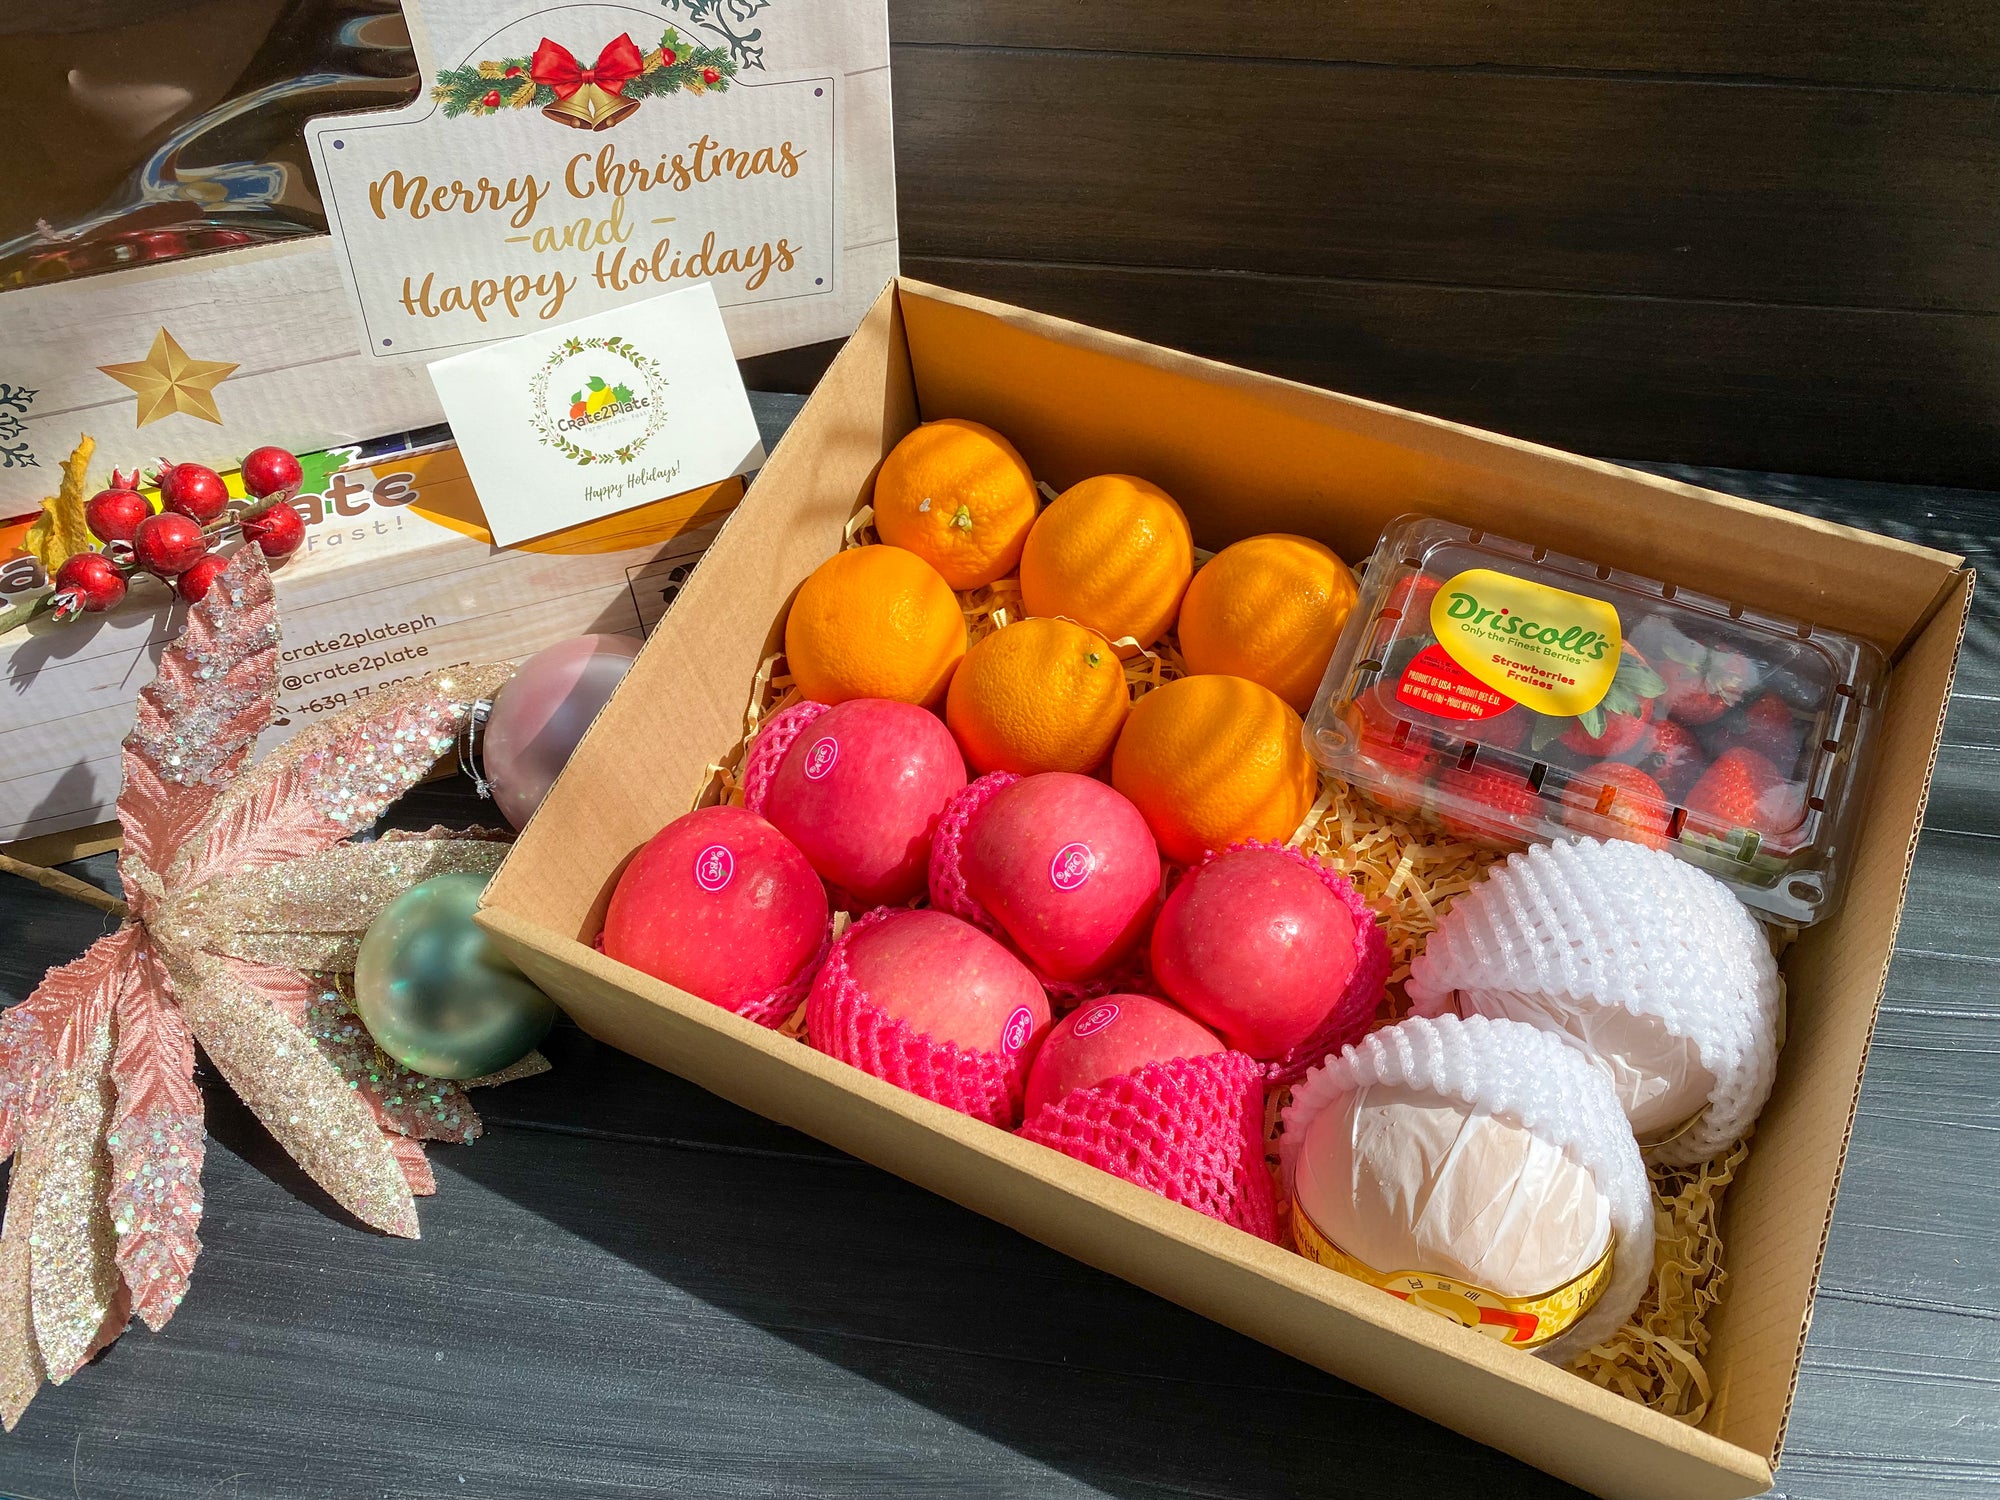 Gift Box Strawberries, Korean Pears, Fuji Apples and Oranges